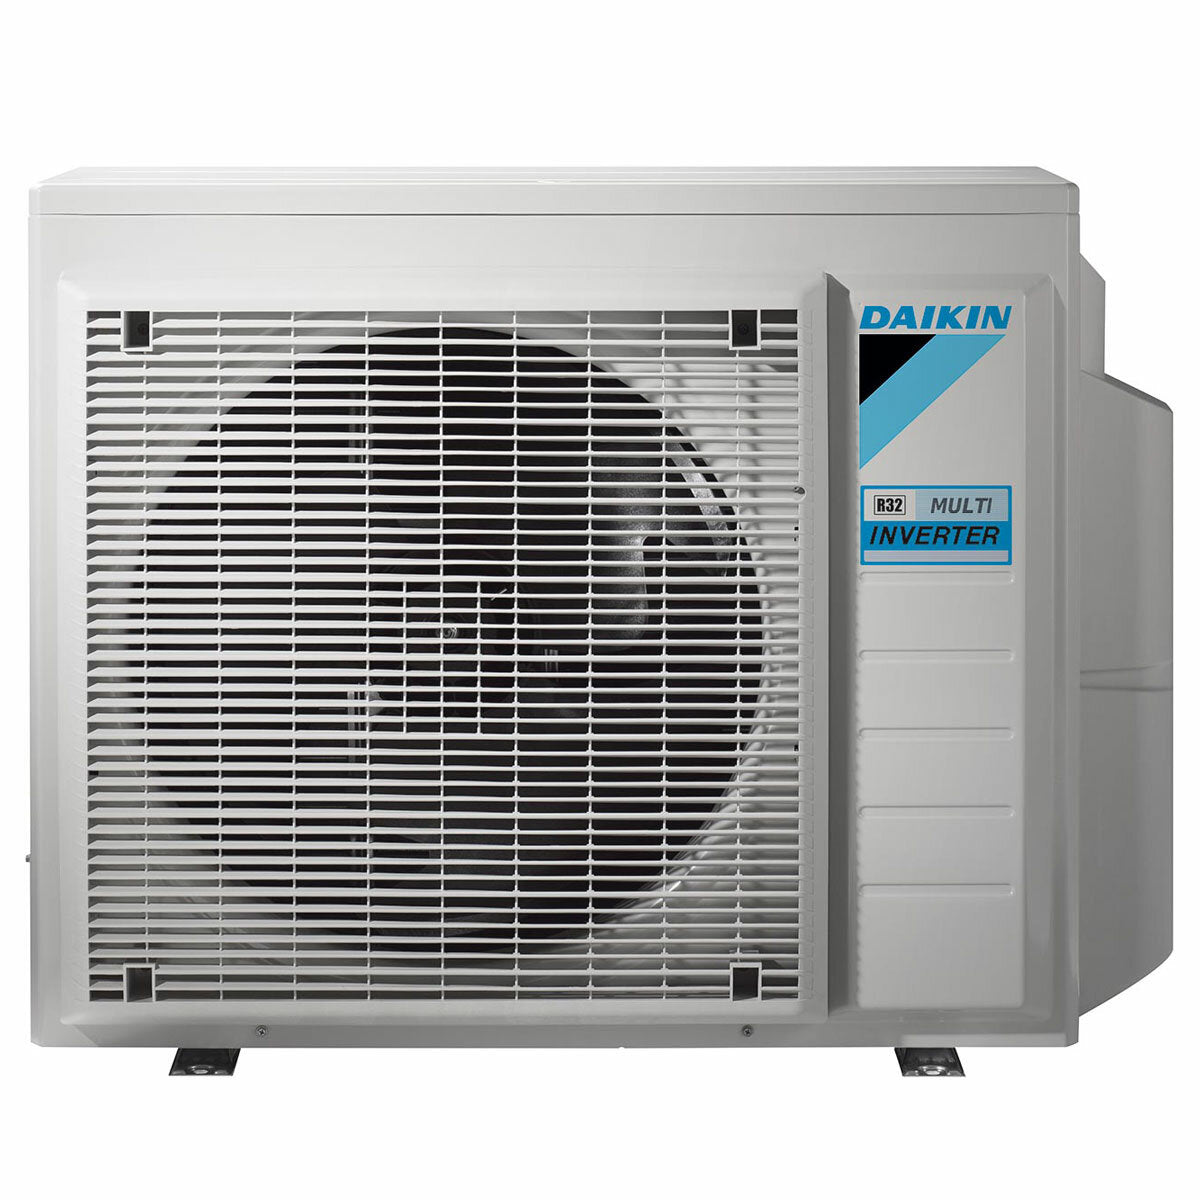 Daikin Emura air conditioner 3 split panels 9000+9000+12000+12000 BTU inverter A++ wifi outdoor unit 7.4 kW Black